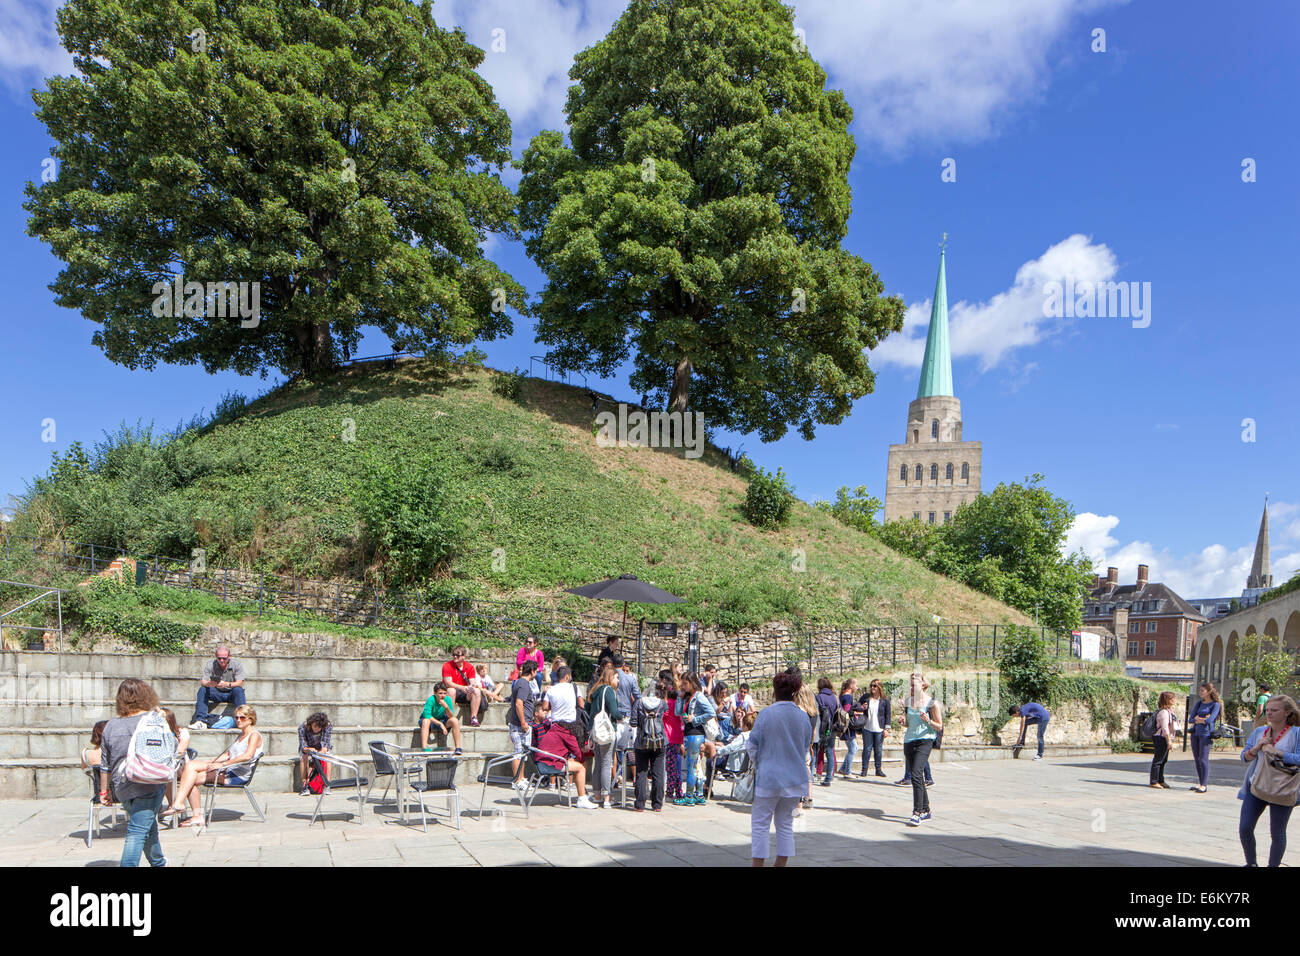 Les touristes dans le parc du château d'Oxford avec la flèche de Nuffield dans la distance, Oxford, England, UK Banque D'Images